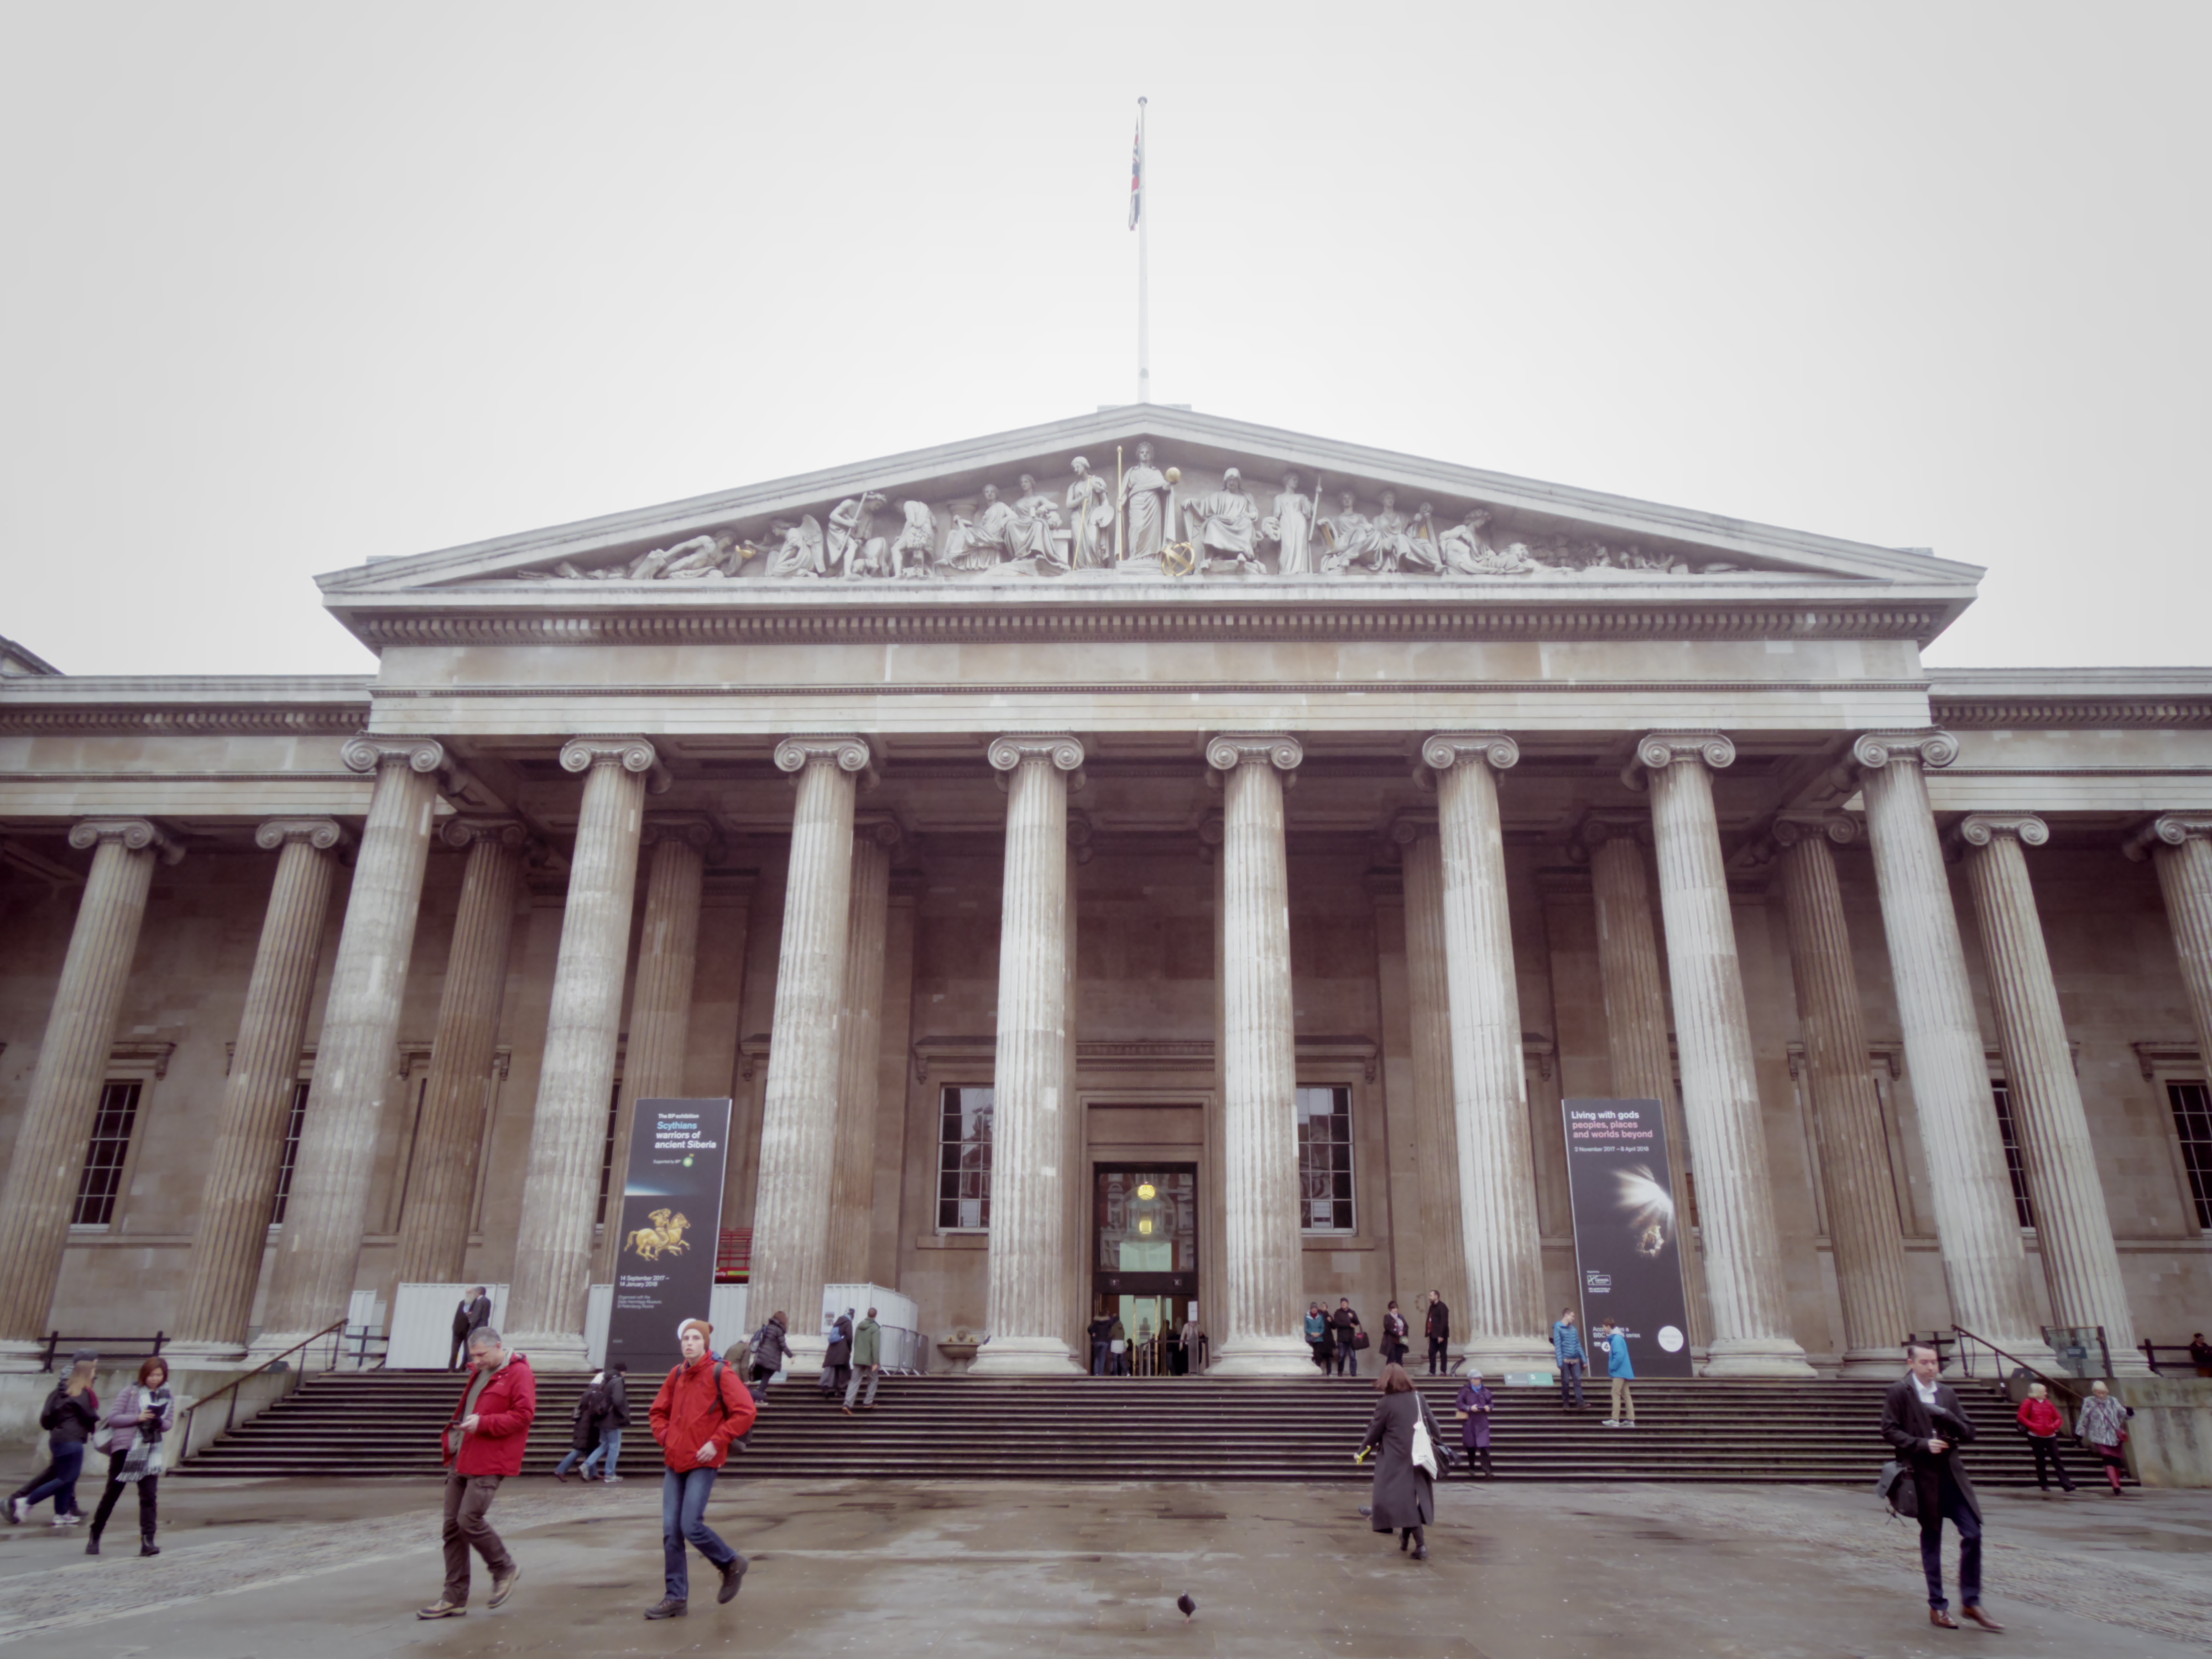 イギリスが誇る大英博物館に行って来た。入場料は無料です。